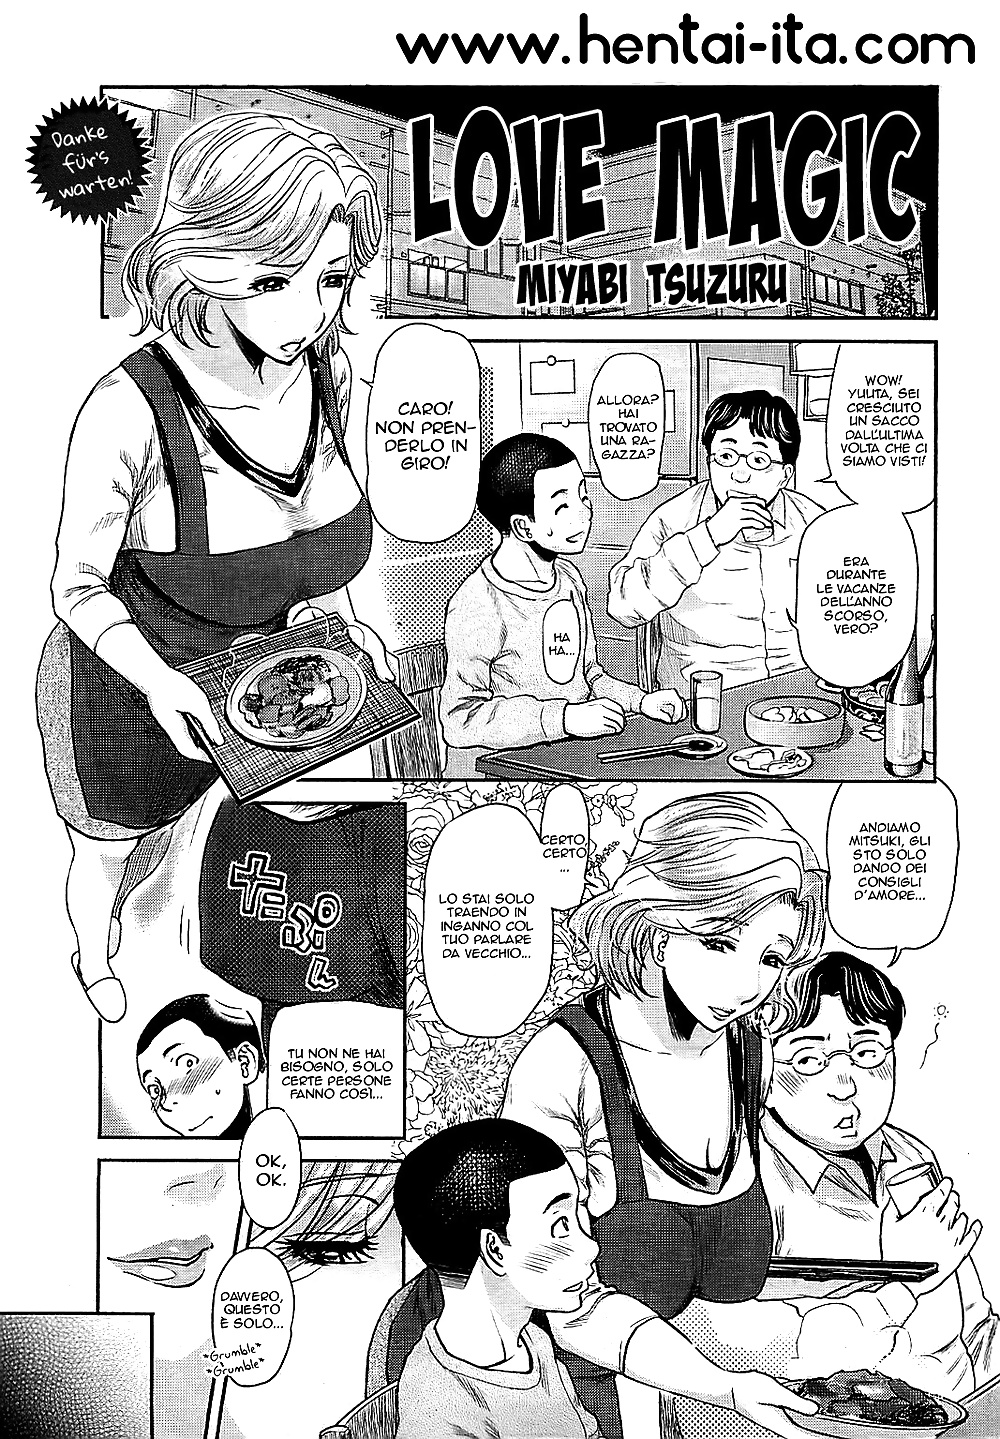 La magia della zia hentai manga italiano
 #27716345